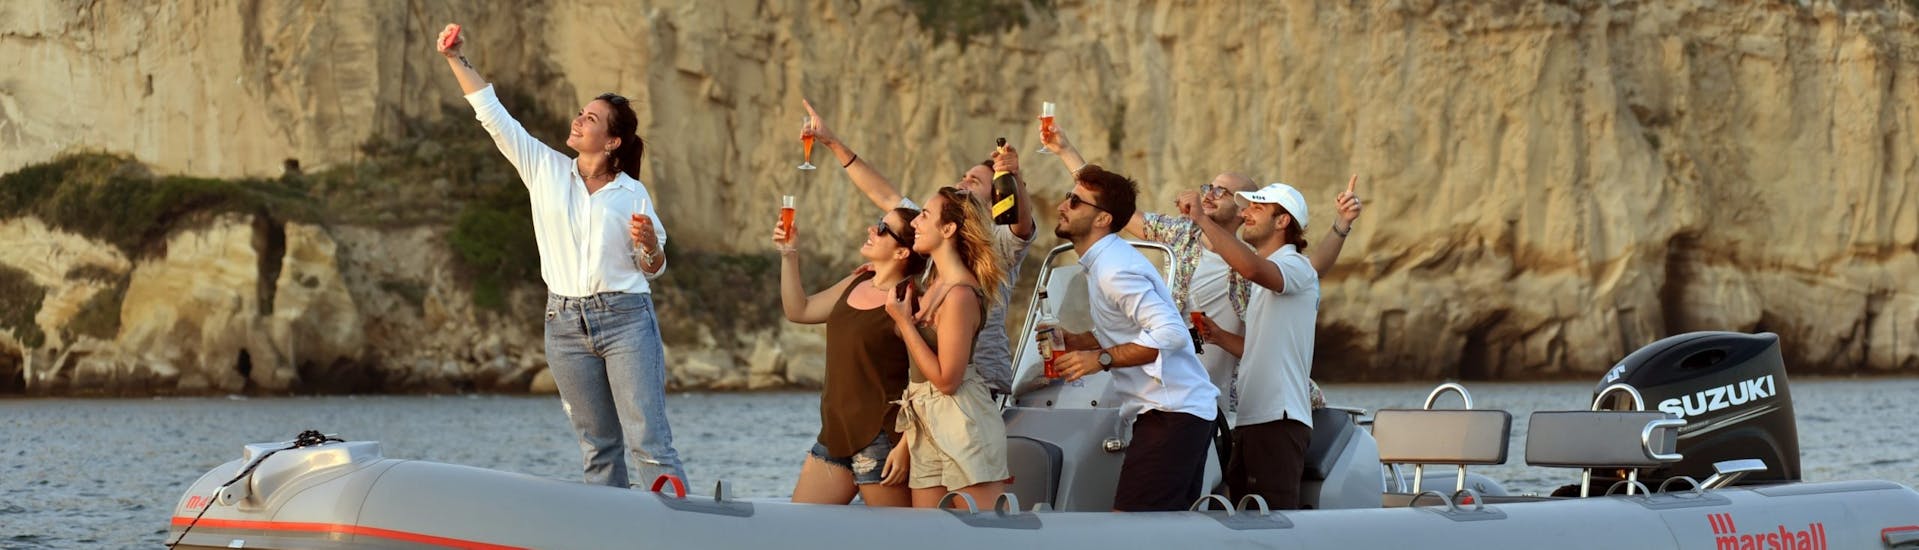 Les gens sur le bateau s'amusent pendant la Balade en bateau semi-rigide au coucher du soleil depuis Naples le long de la côte avec Apéritif avec Seaside Napoli organisée par Seaside Napoli.